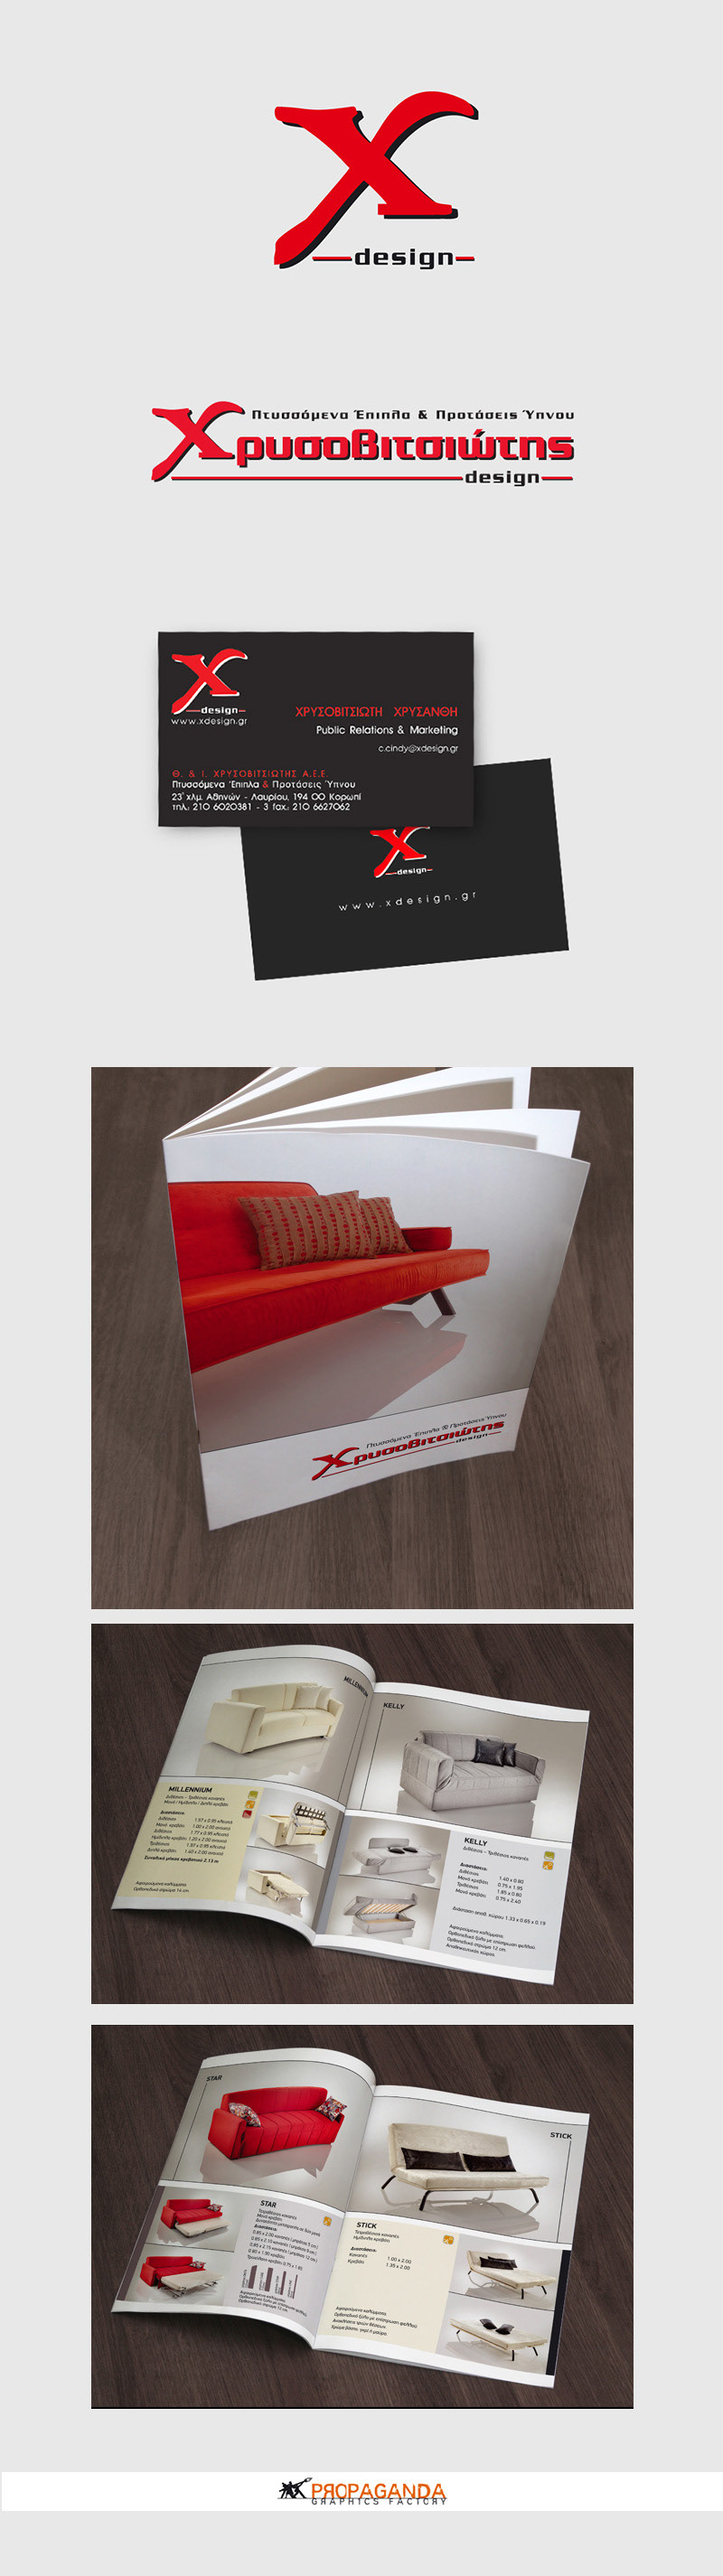 furniture xdesign